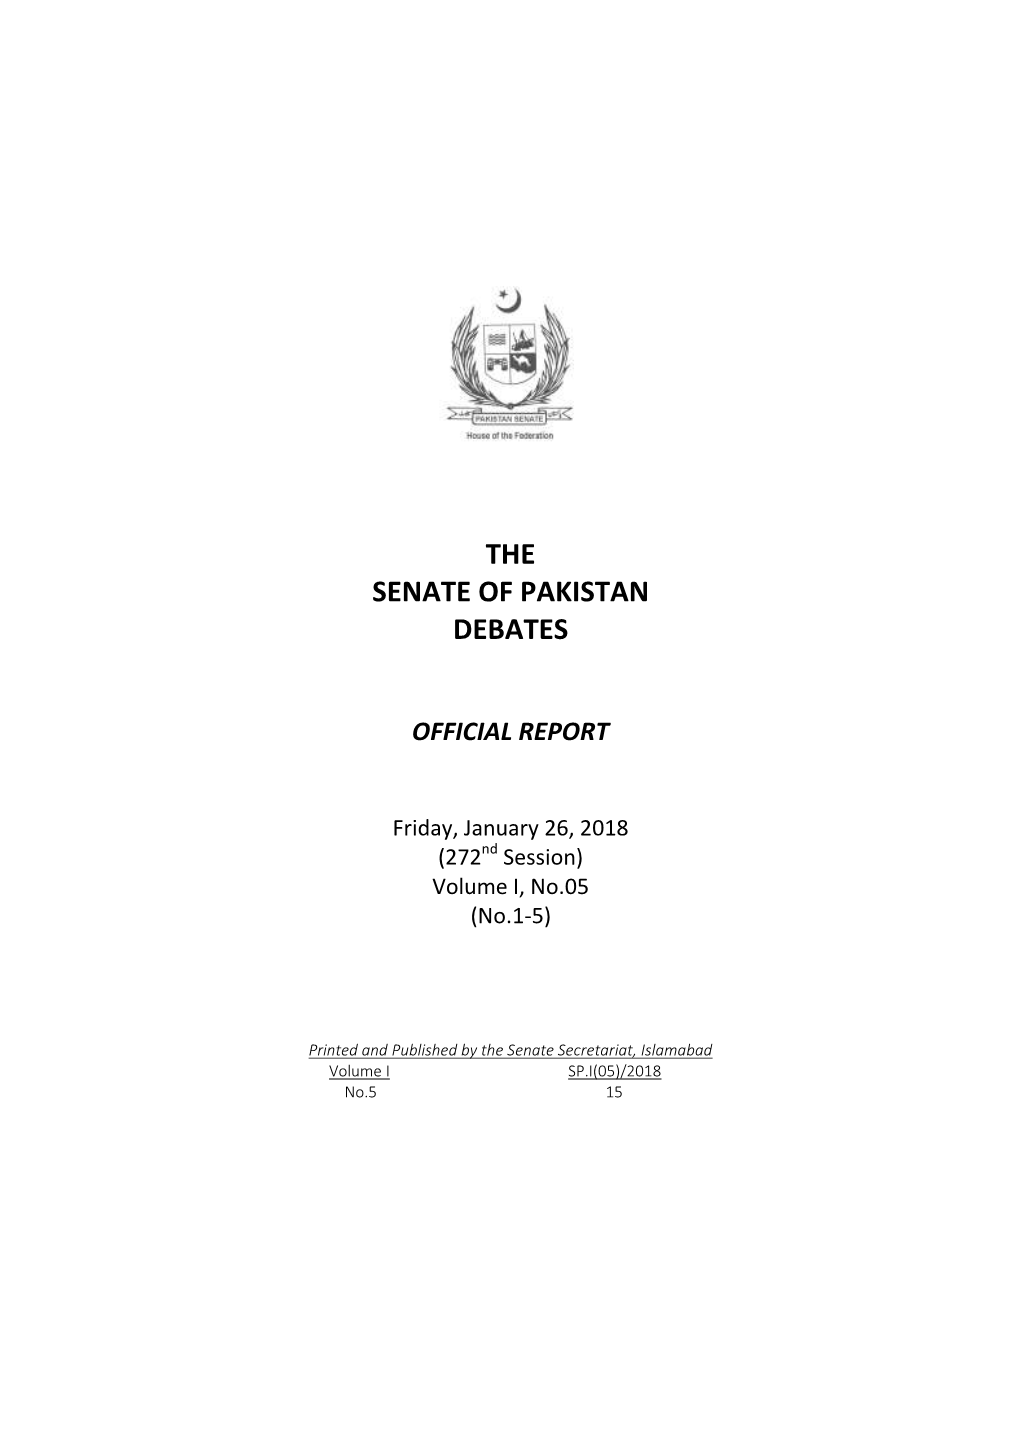 The Senate of Pakistan Debates Official Report